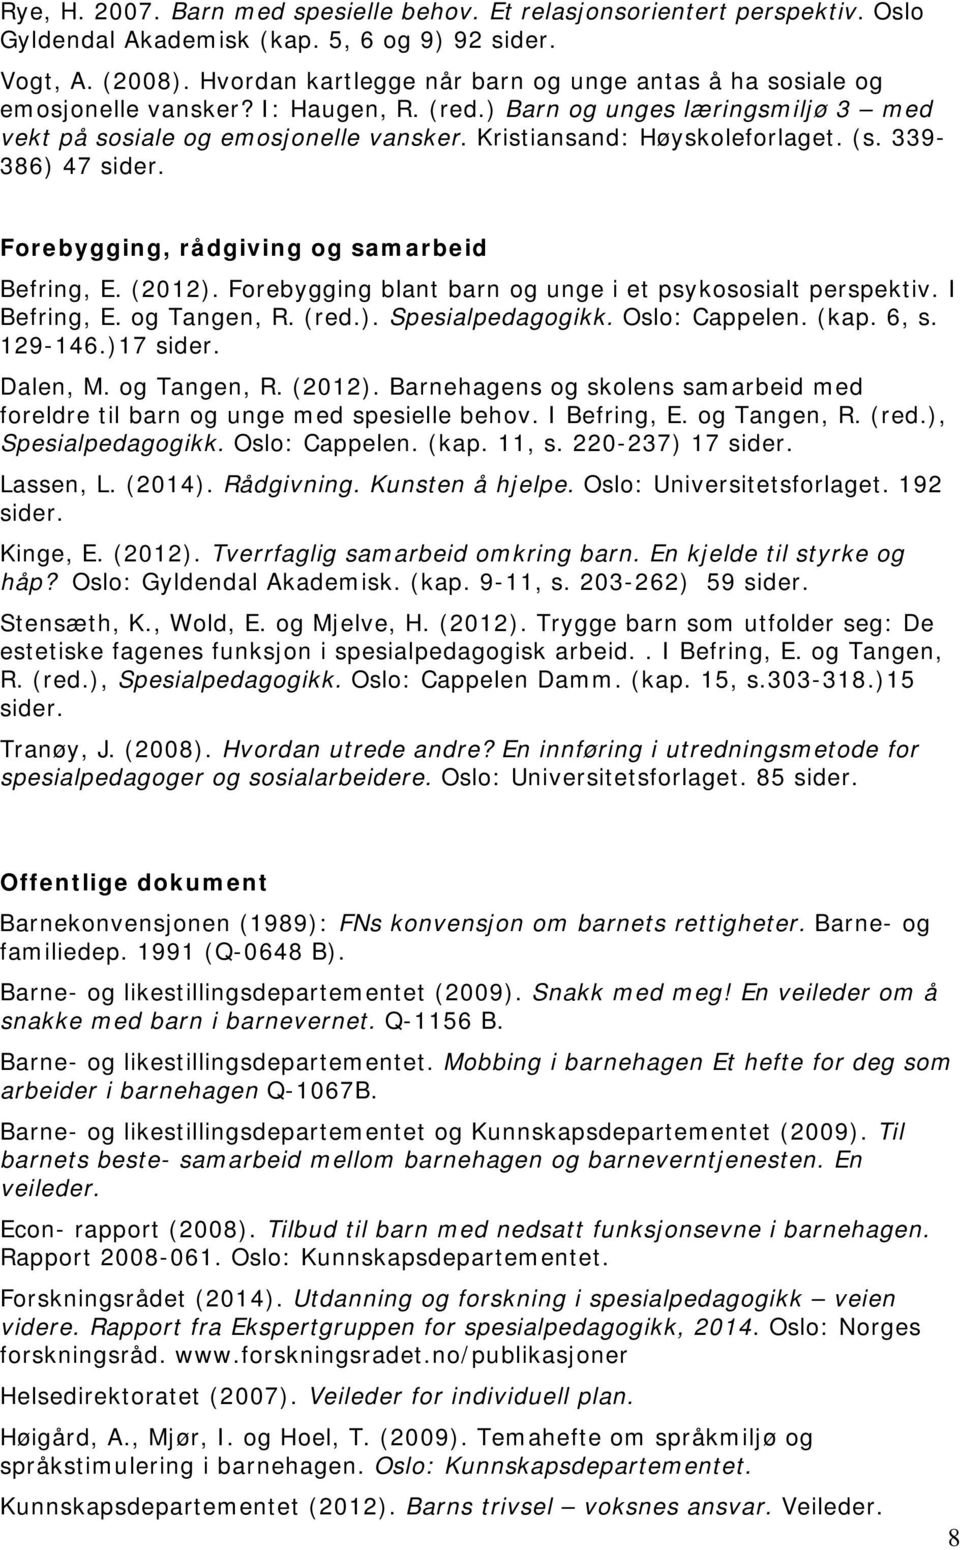 Kristiansand: Høyskoleforlaget. (s. 339-386) 47 sider. Forebygging, rådgiving og samarbeid Befring, E. (2012). Forebygging blant barn og unge i et psykososialt perspektiv. I Befring, E. og Tangen, R.